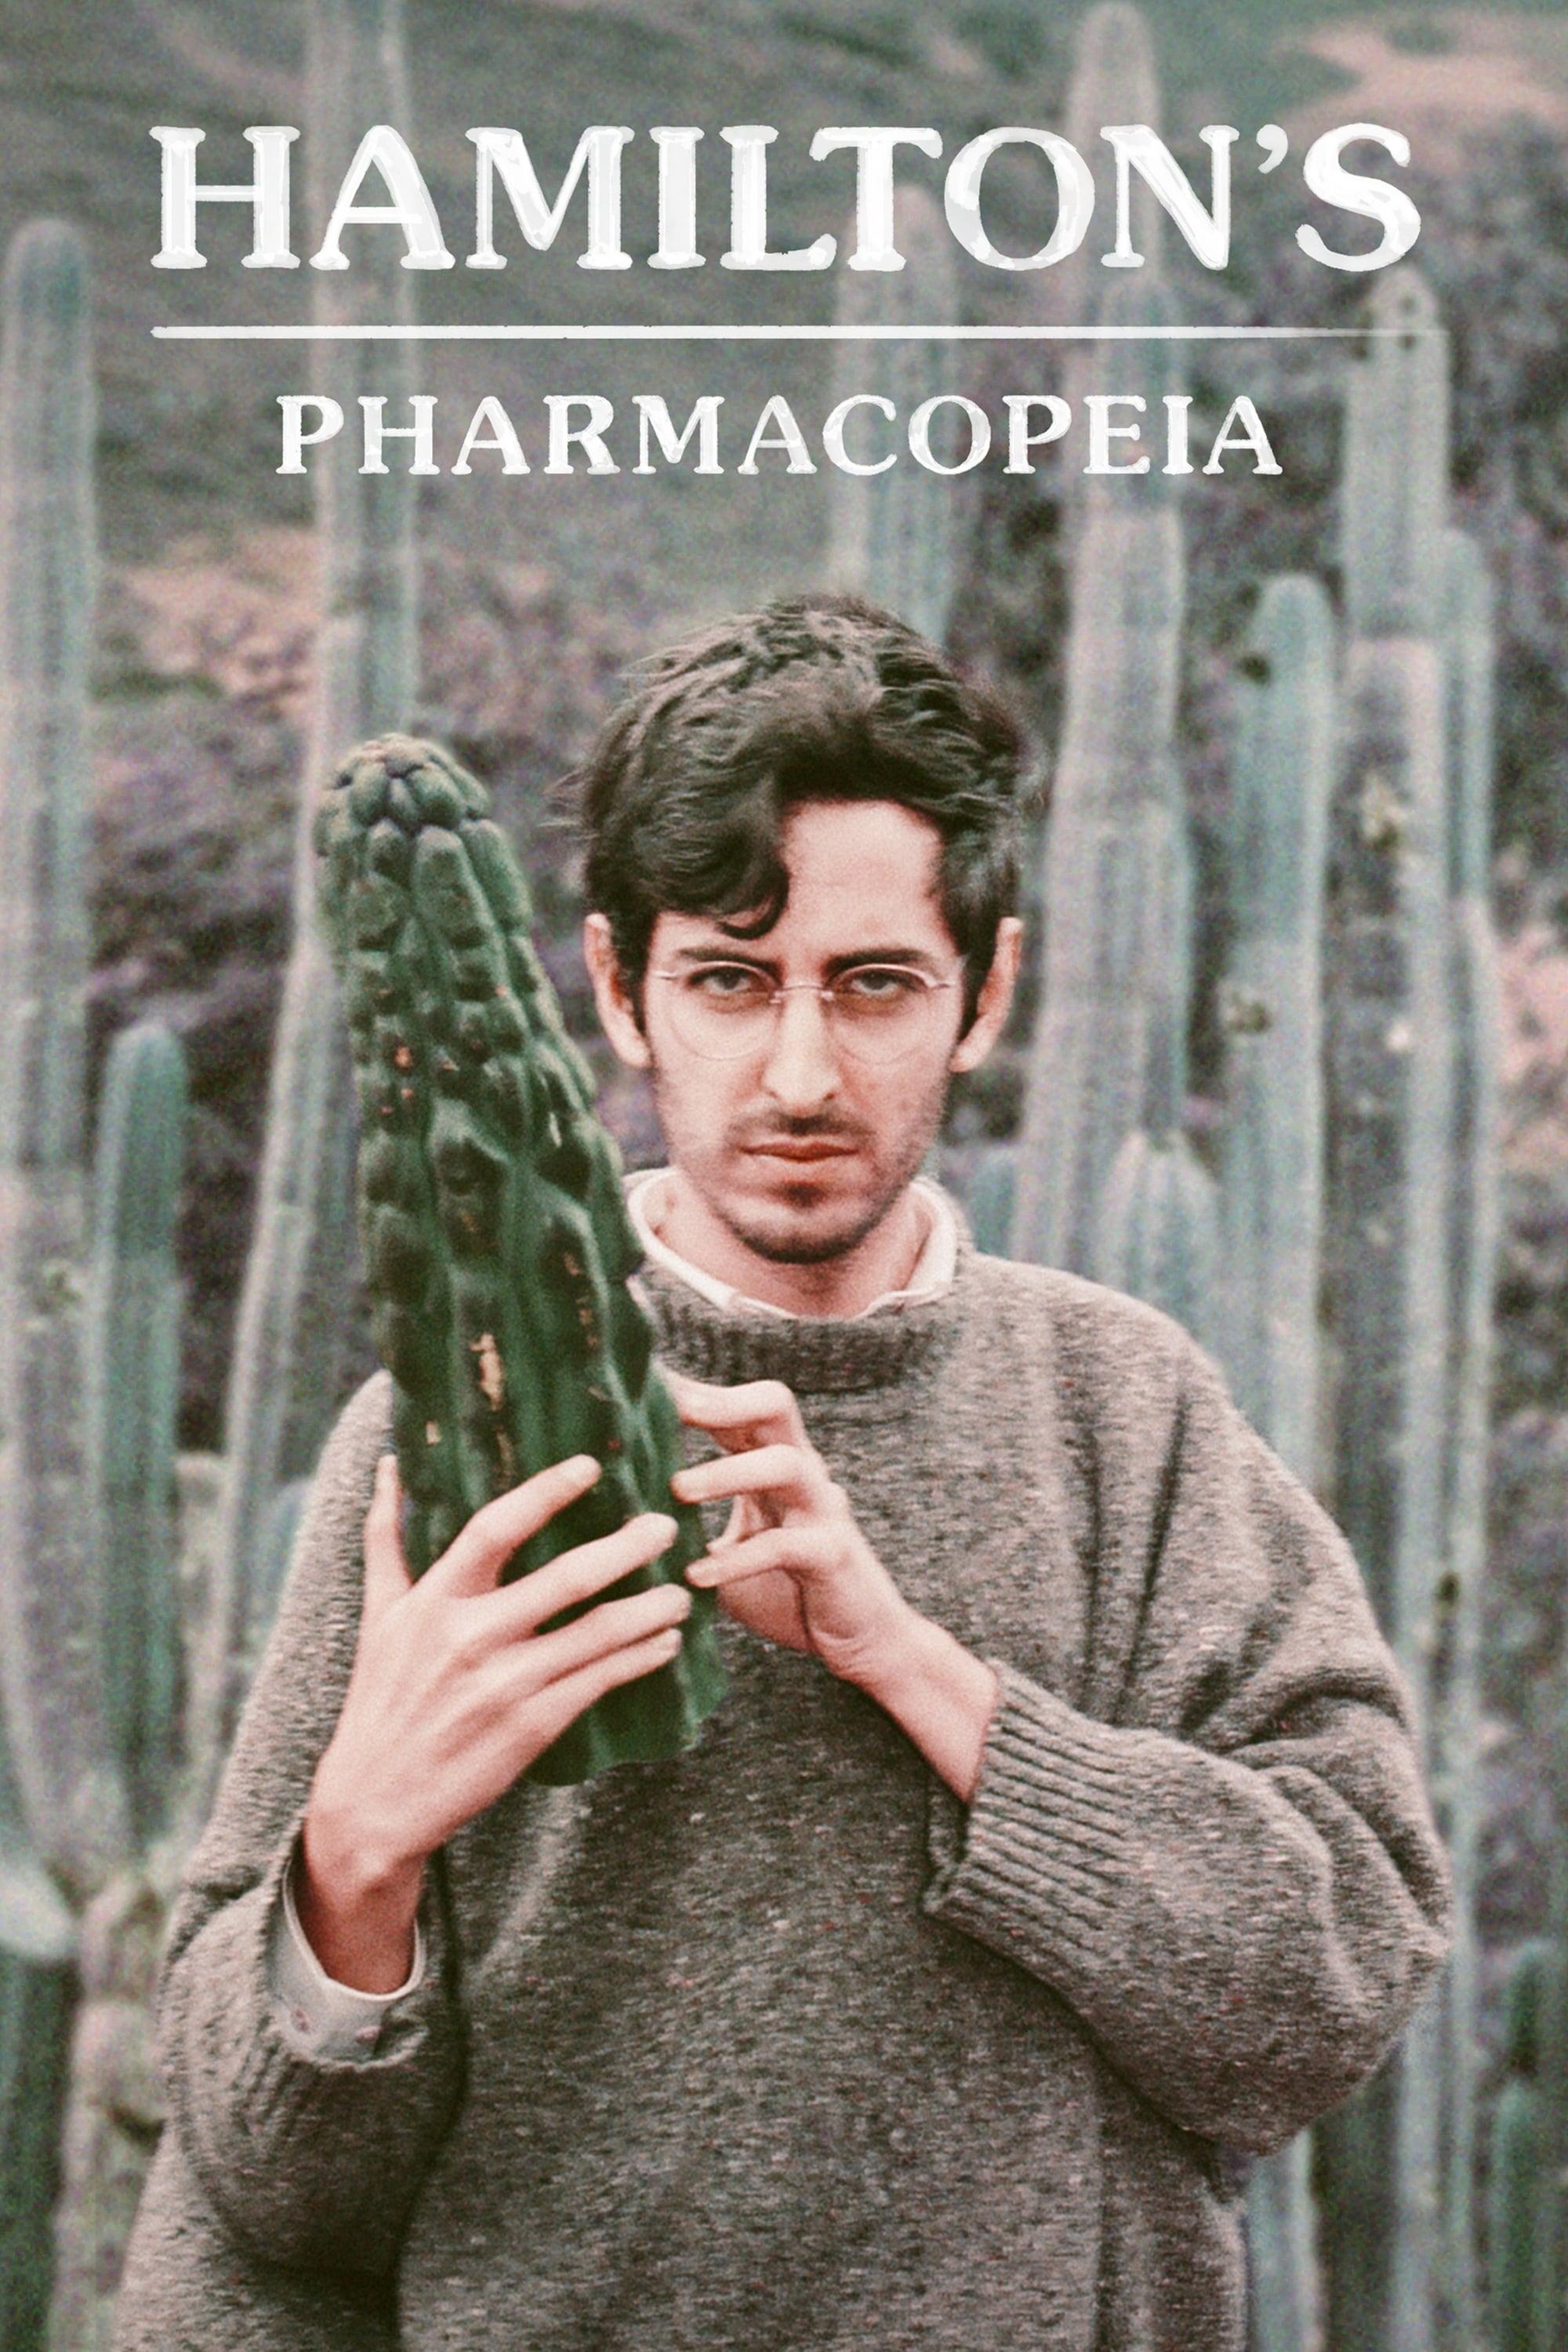 Hamilton's Pharmacopeia poster